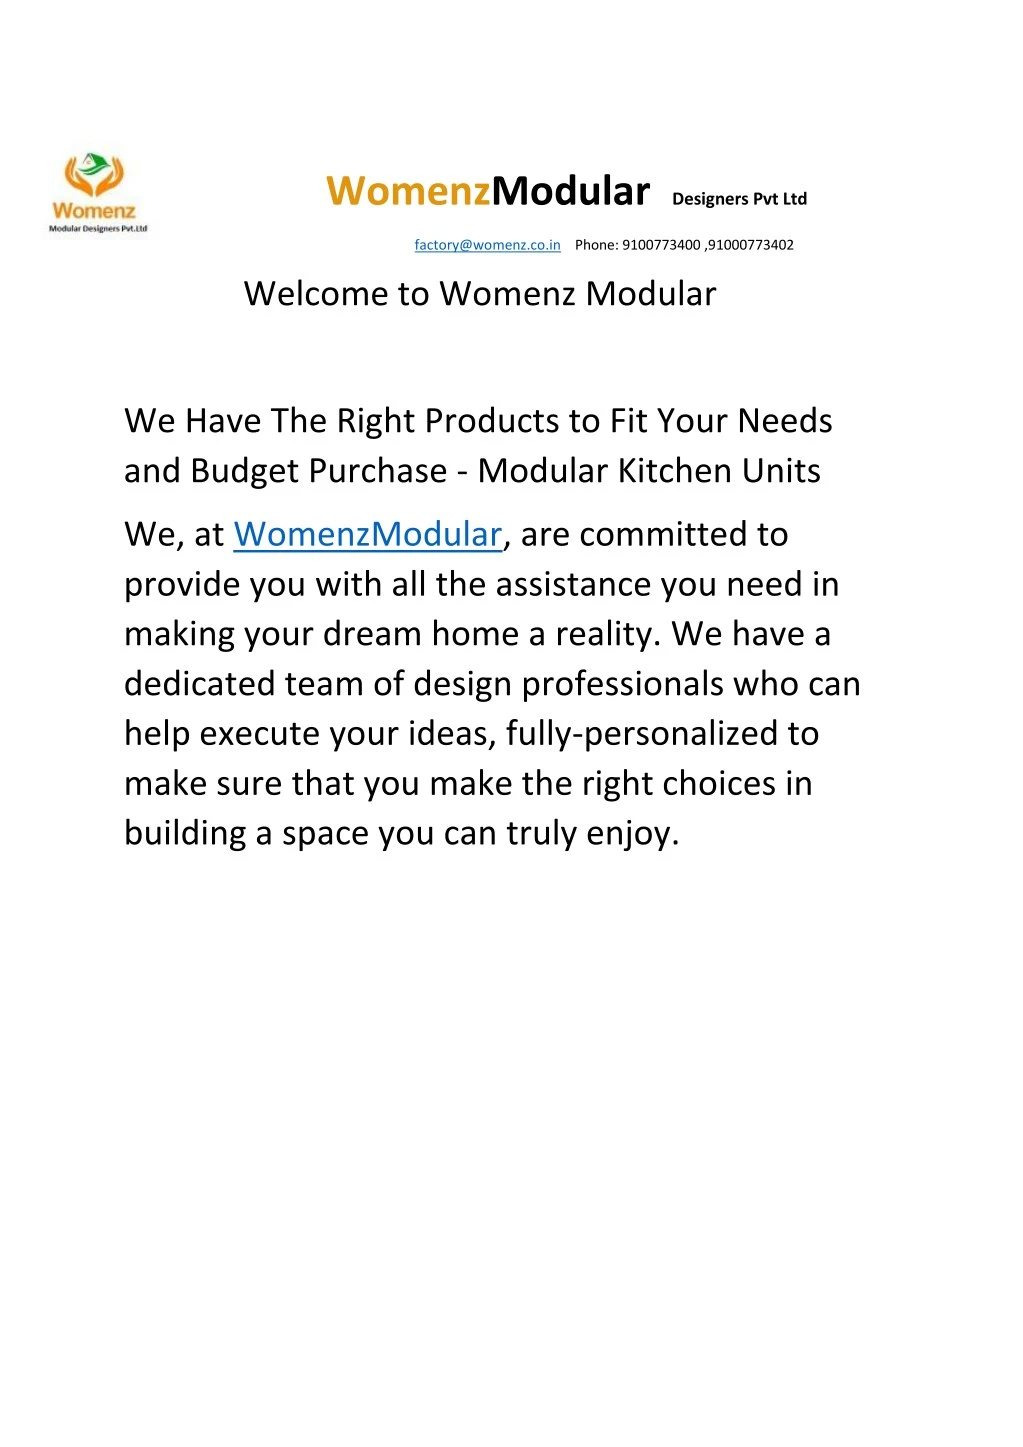 womenzmodular designers pvt ltd factory@womenz